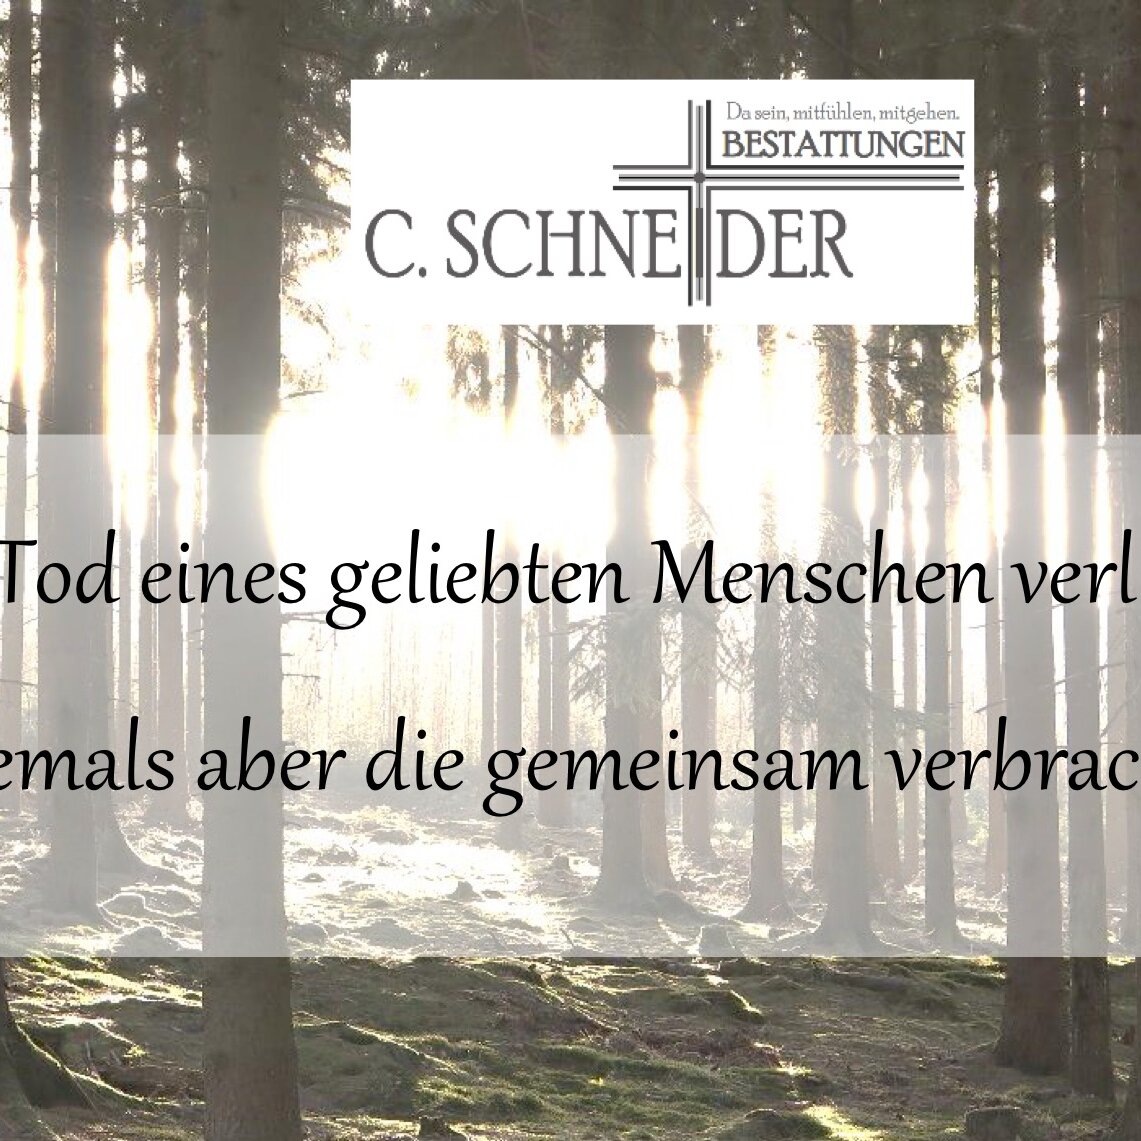 Kundenbild groß 12 Bestattungen C. Schneider vorm. Anschütz Bestattungen seit 1713